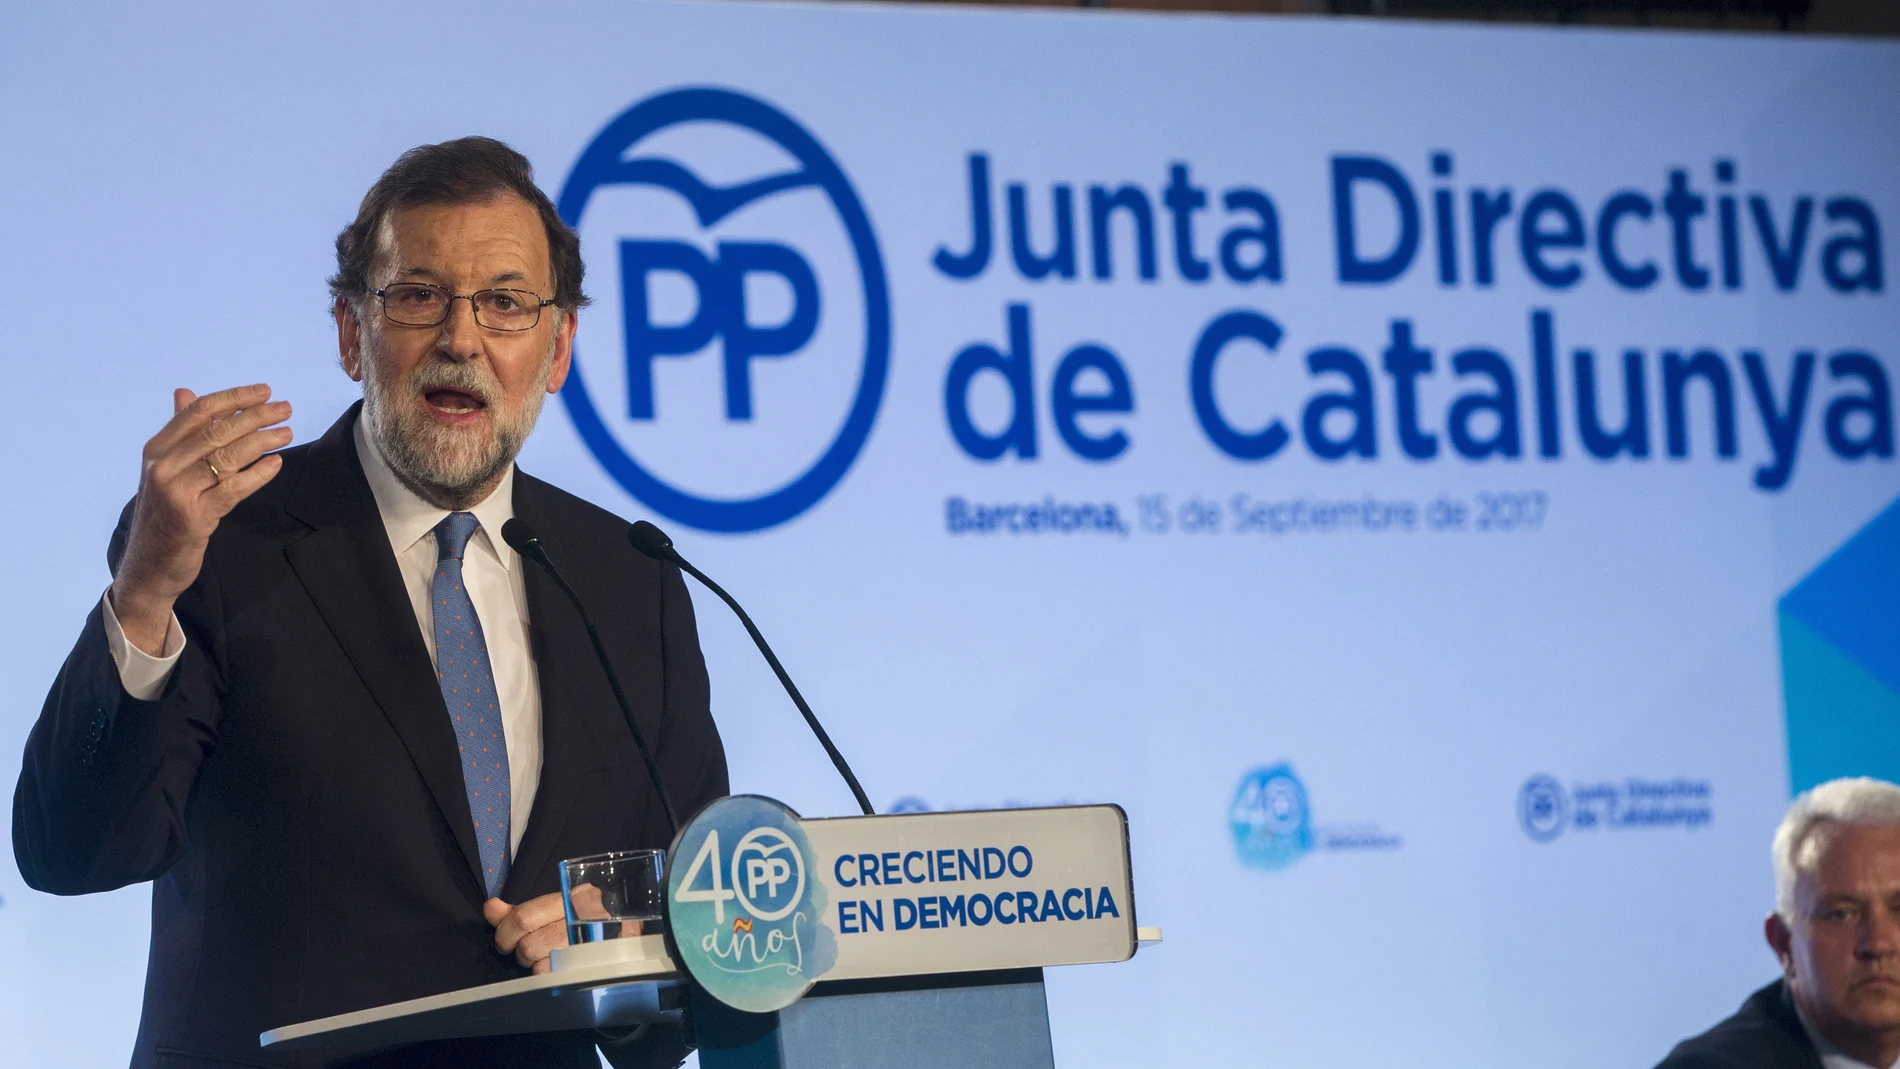 El presidente del Gobierno, Mariano Rajoy, preside la Junta Directiva del PP de Cataluña